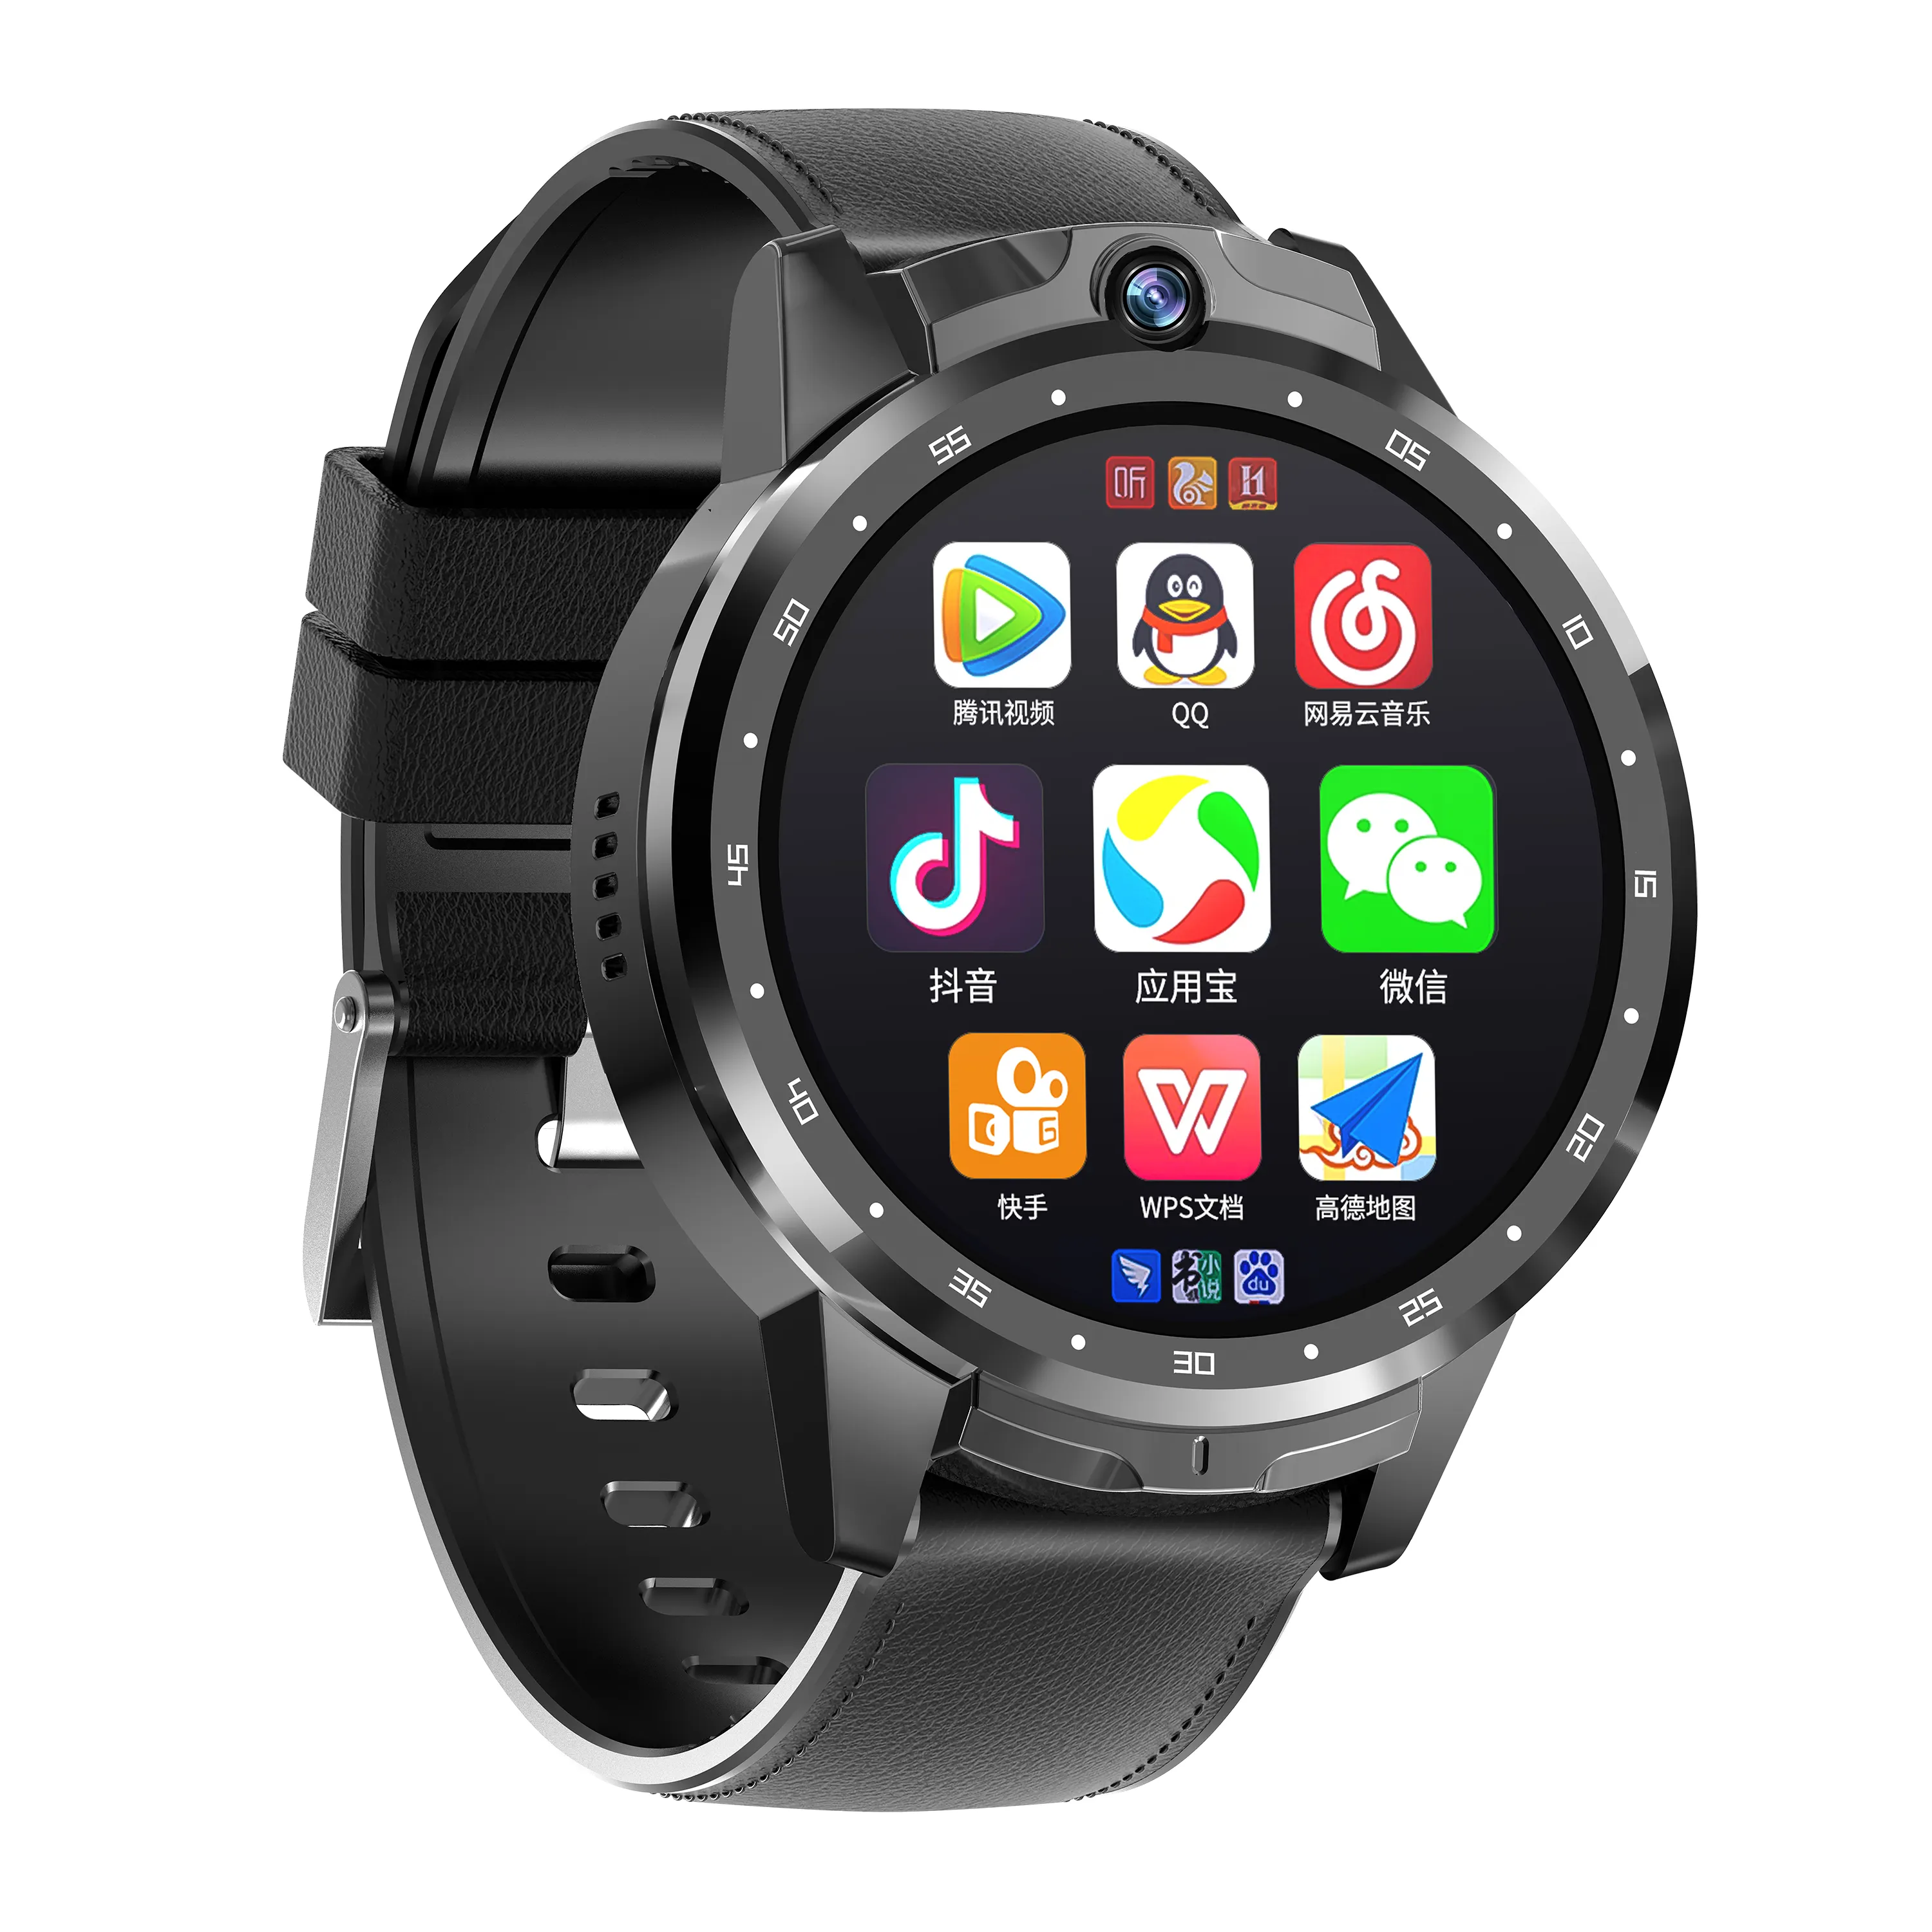 Smartwatch 4g android gps wifi 4g, smartwatch com câmera 5mp lte sim card slot android 8.1 dual câmera tela de 1.6 polegadas